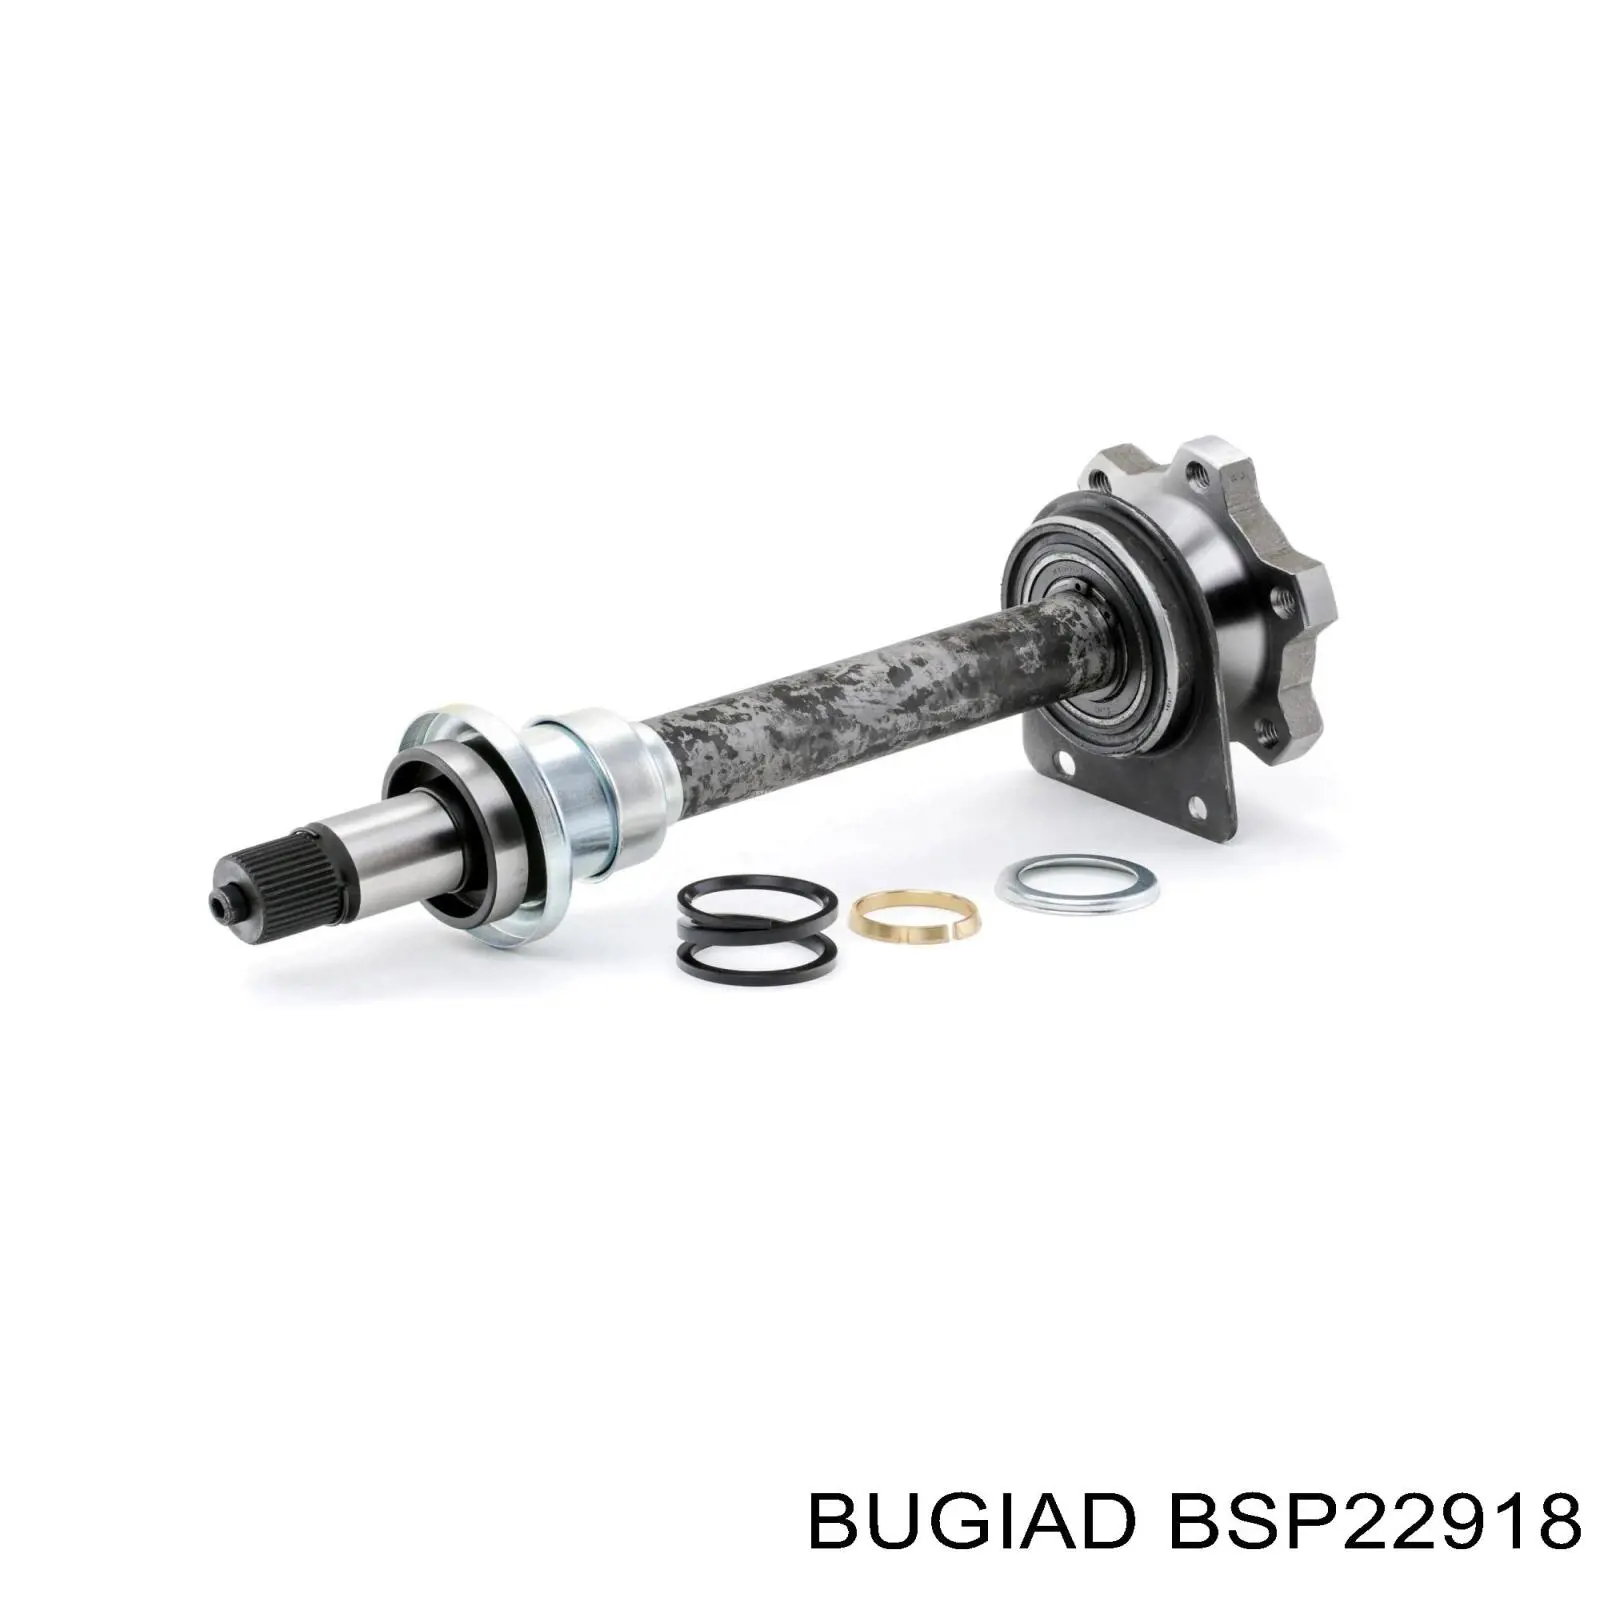 BSP22918 Bugiad вал привода полуоси промежуточный